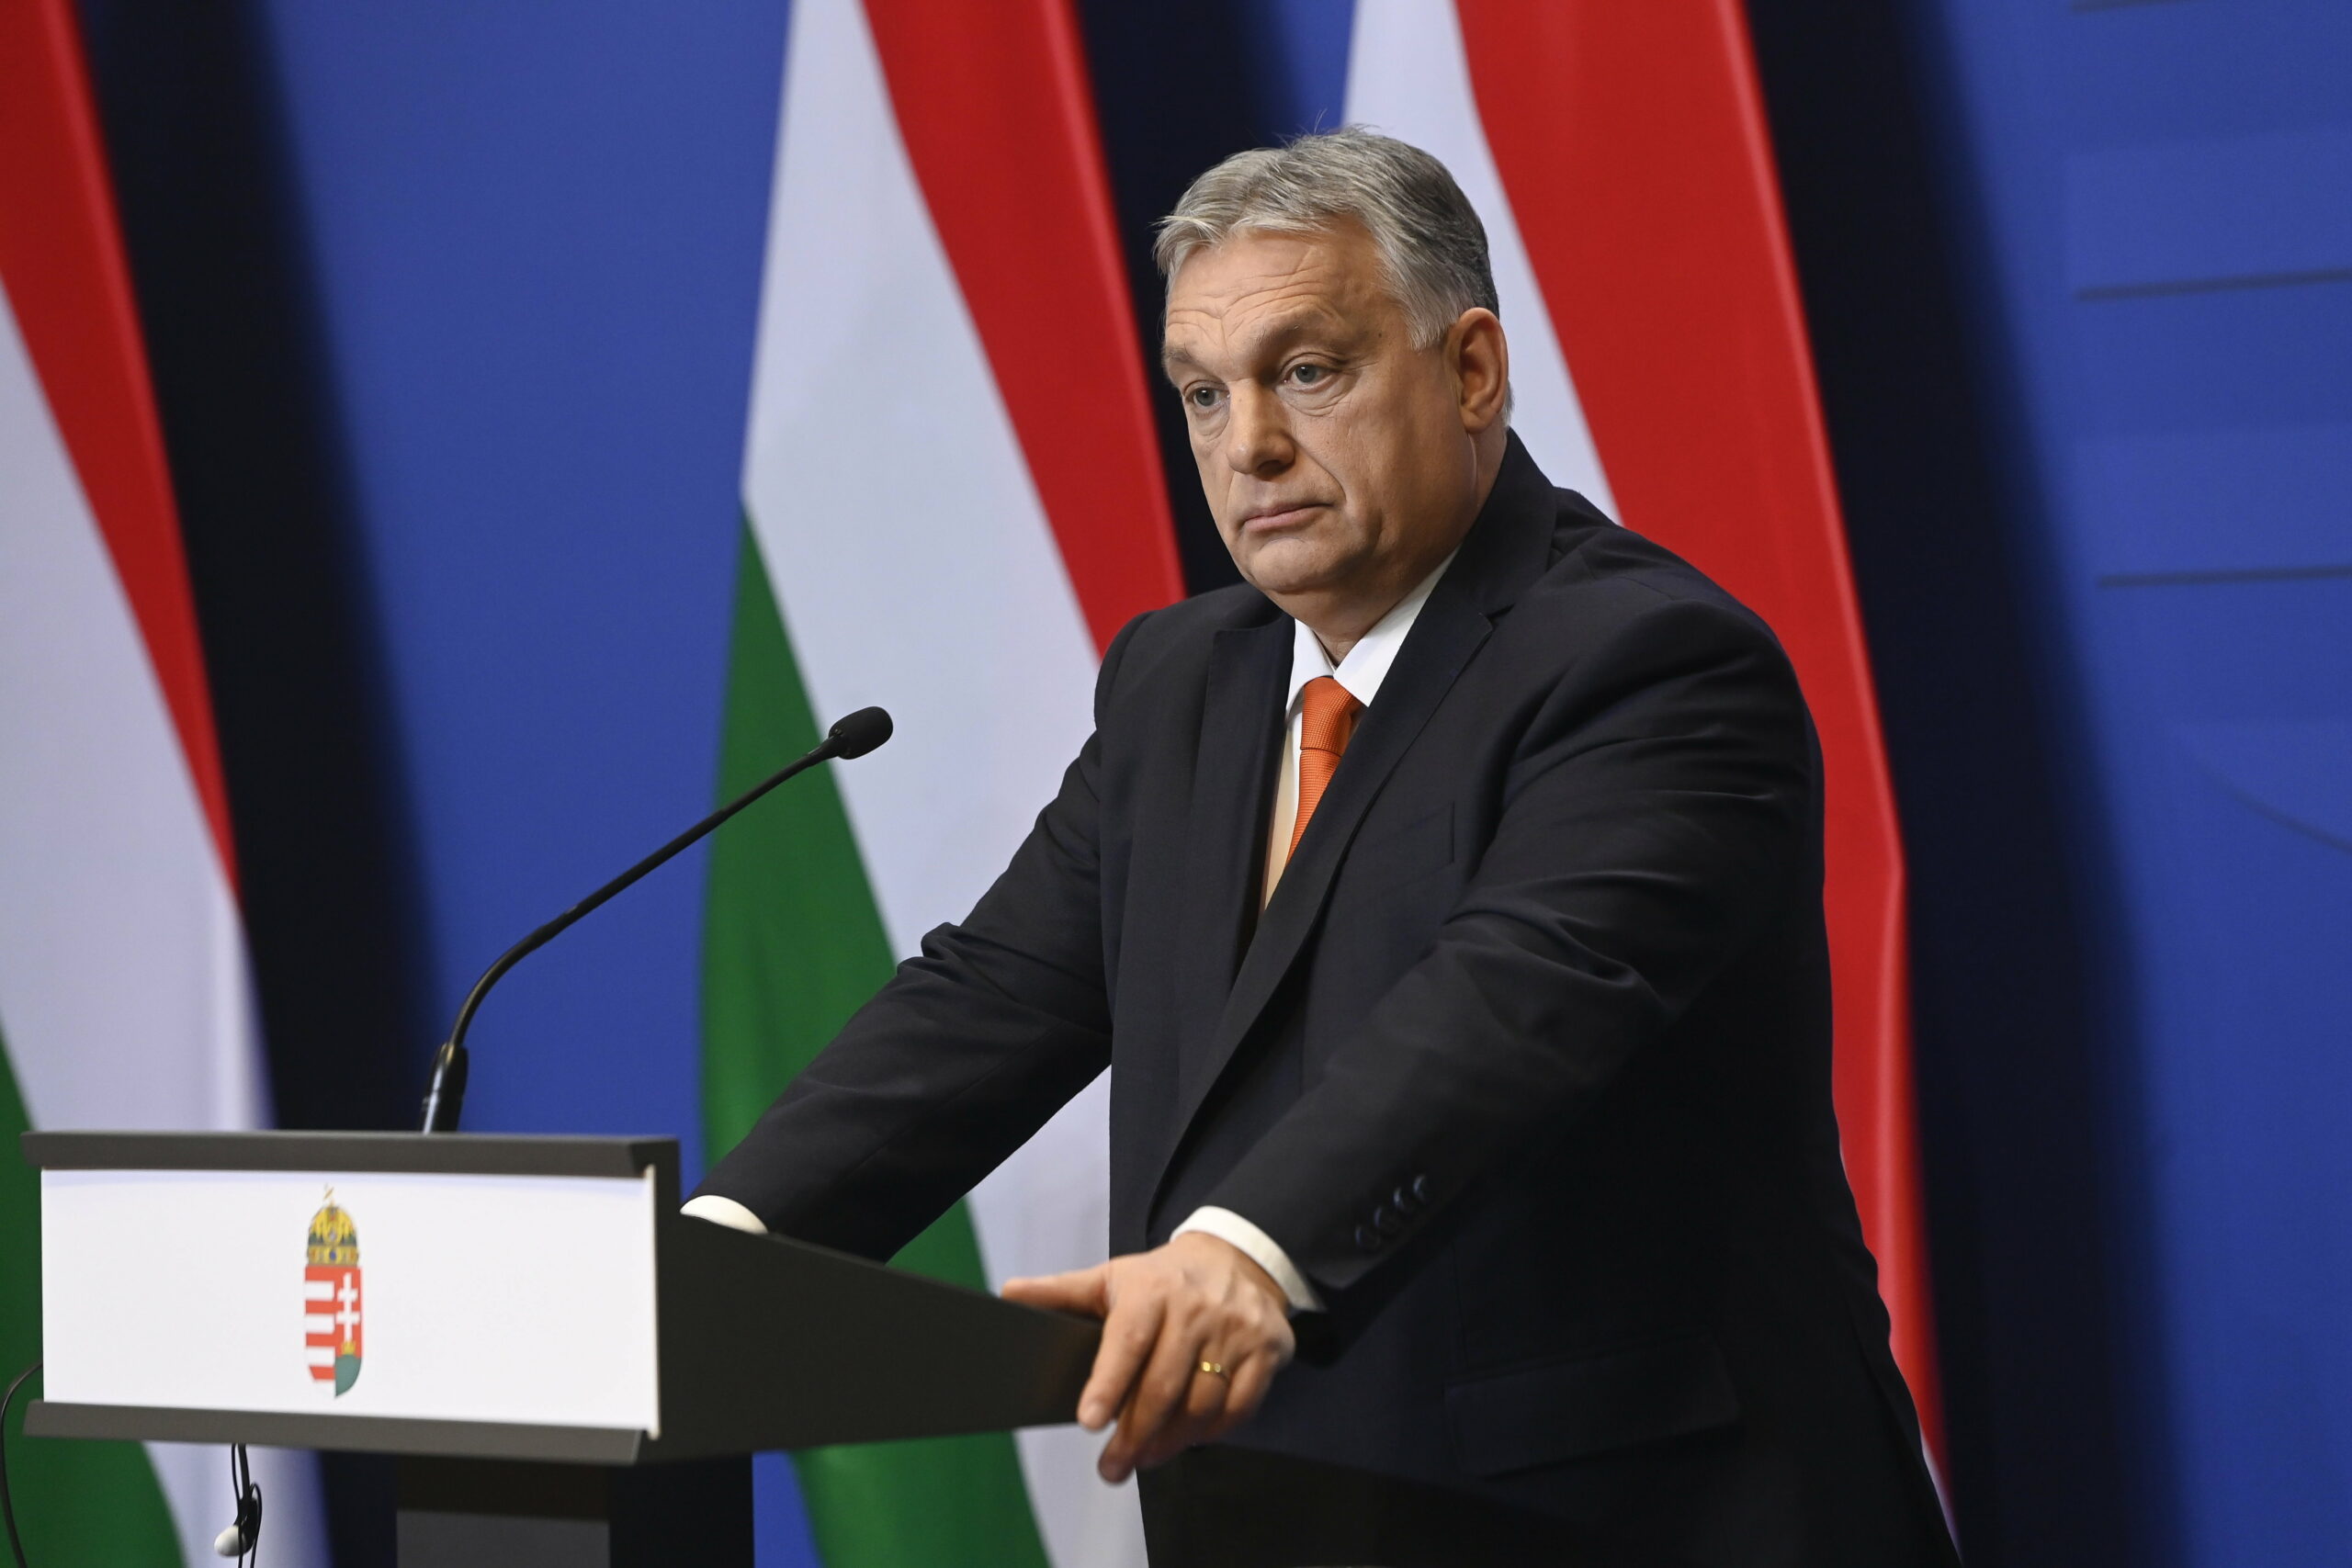 Megkérdezték Orbántól, hogy gondolkodott-e már a visszavonuláson, ezt válaszolta